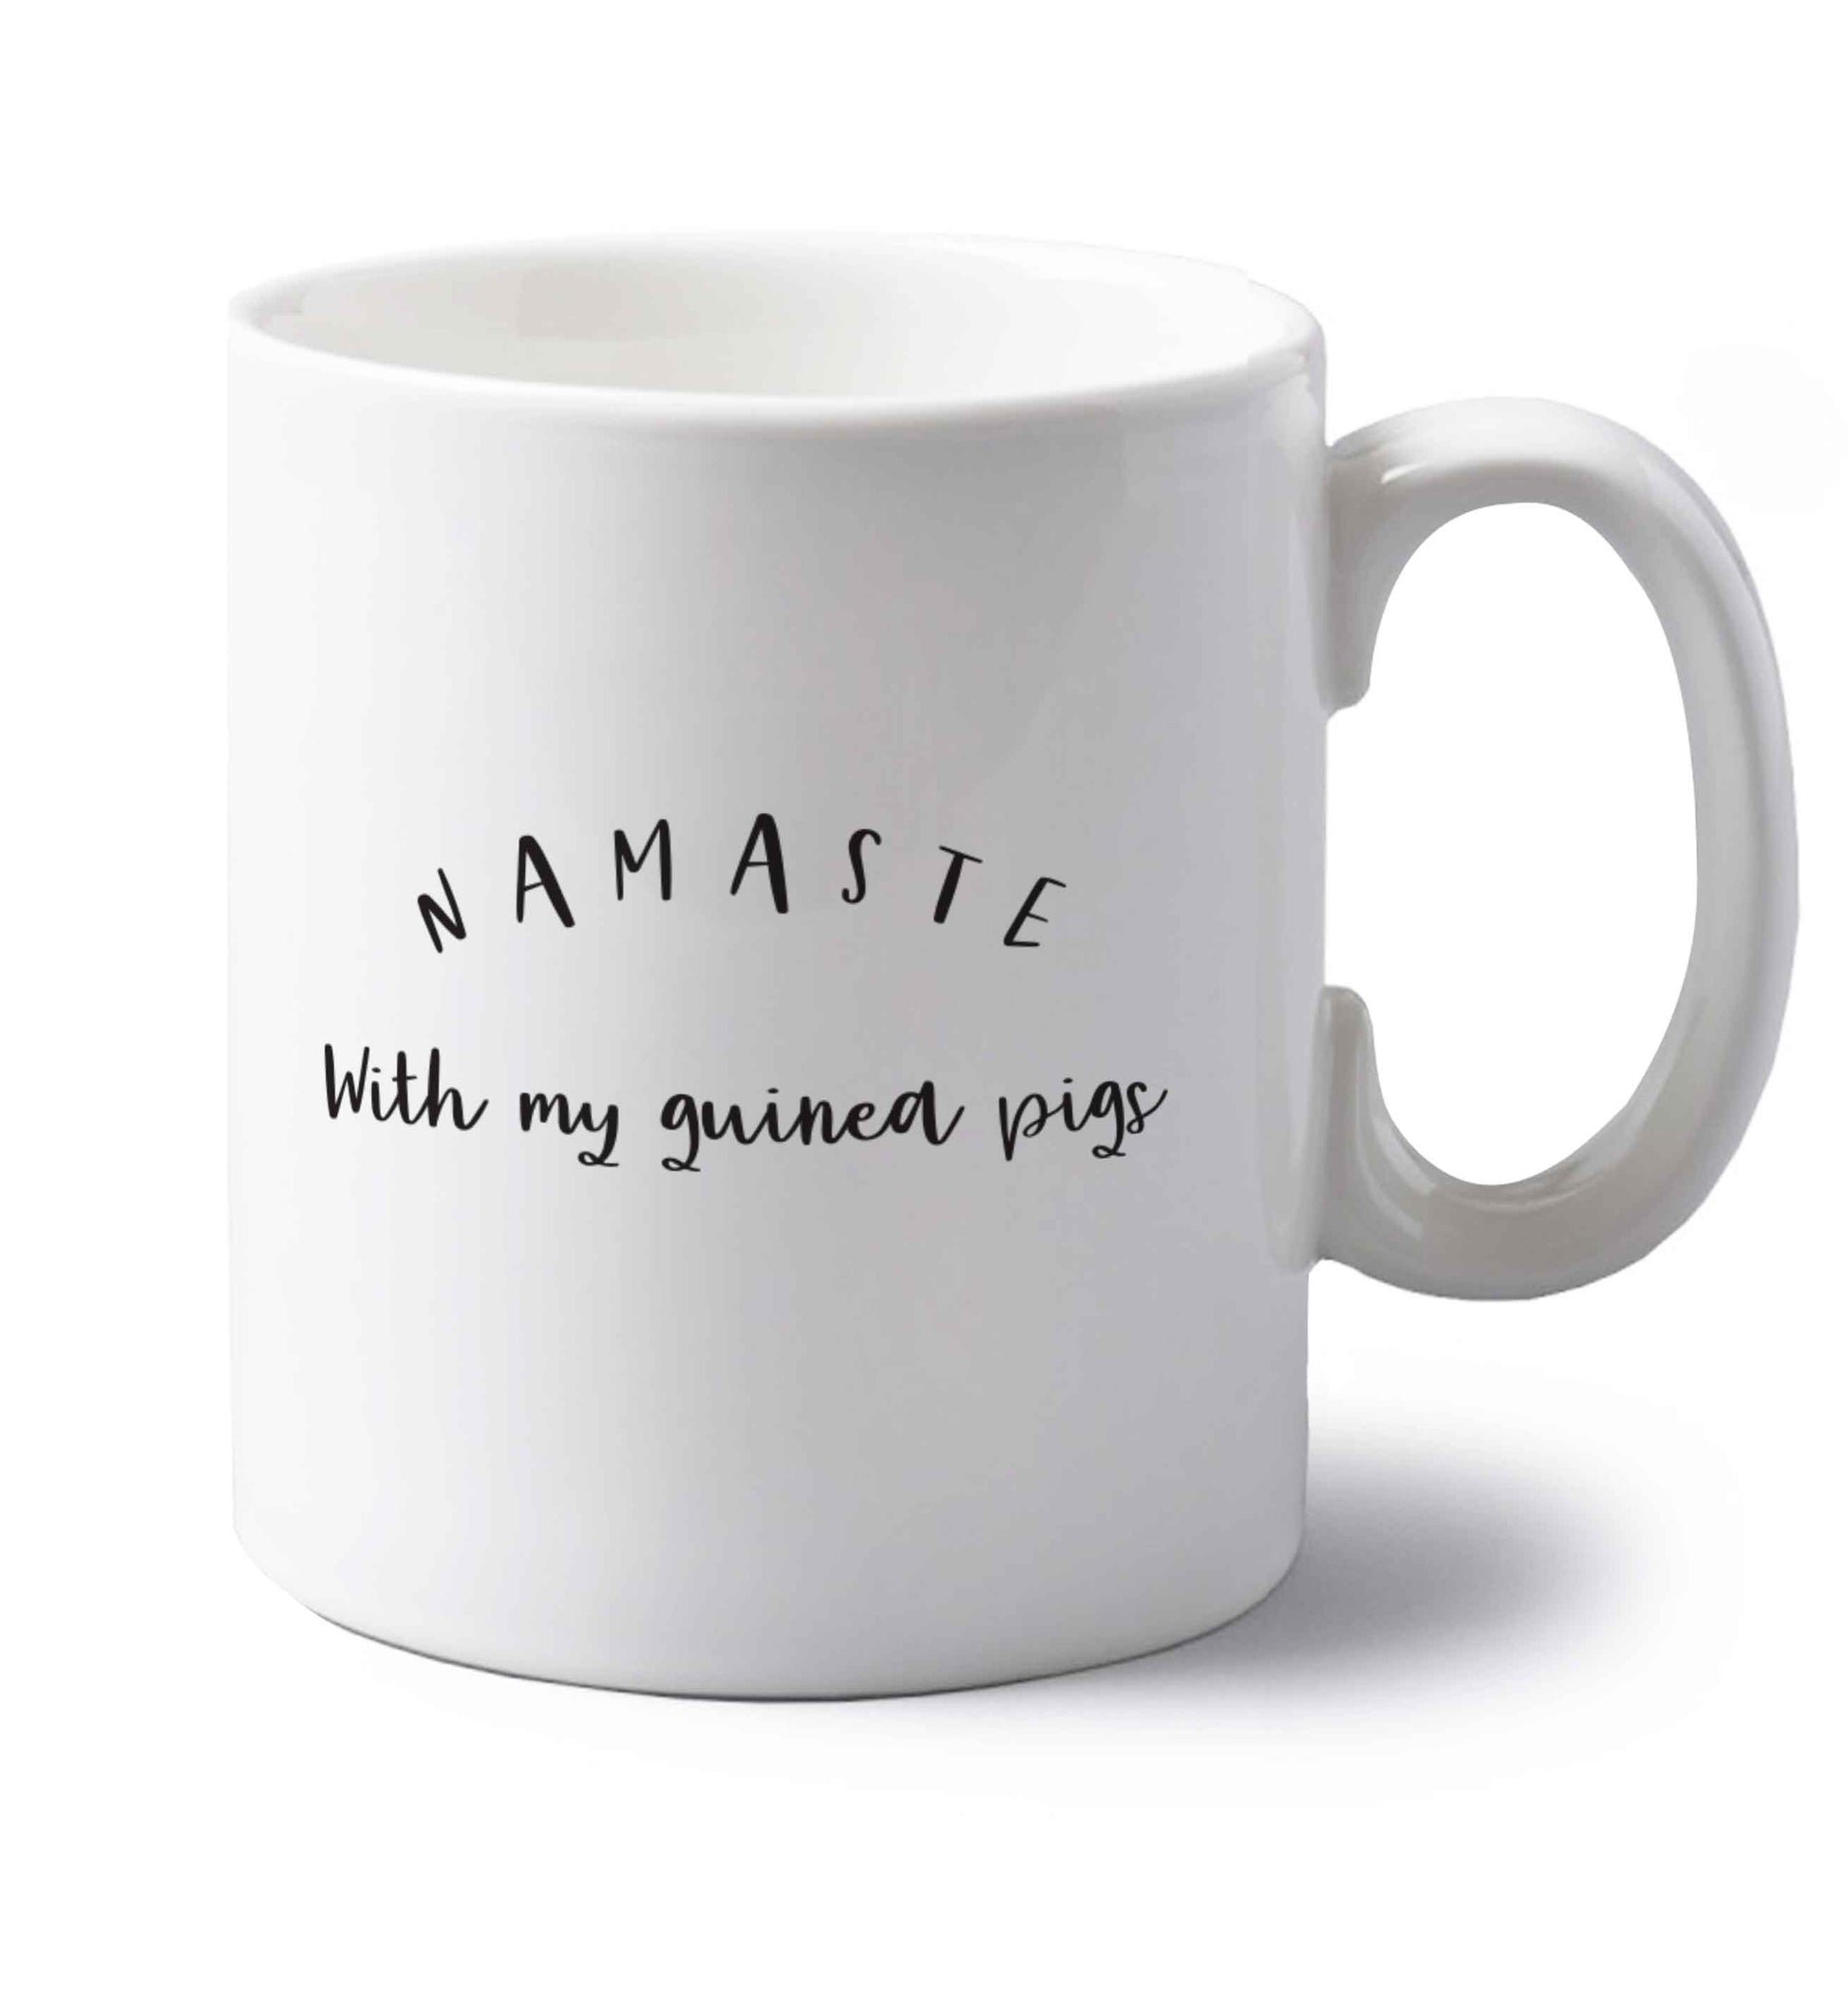 Namaste with my guinea pigs left handed white ceramic mug 